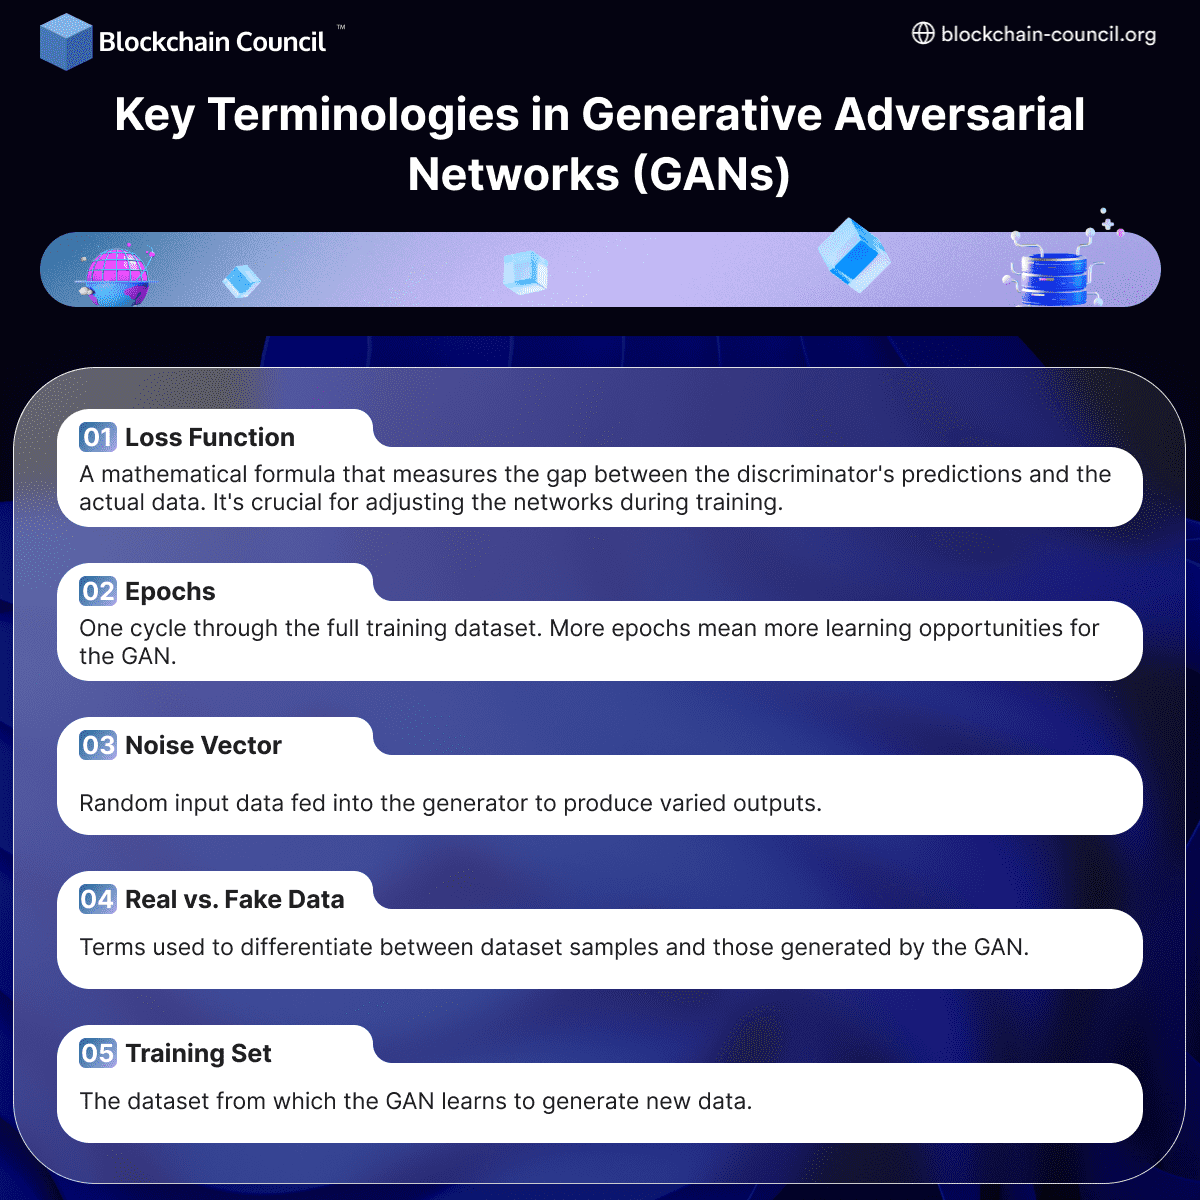 Key Terminologies in Generative Adversarial Networks (GANs)